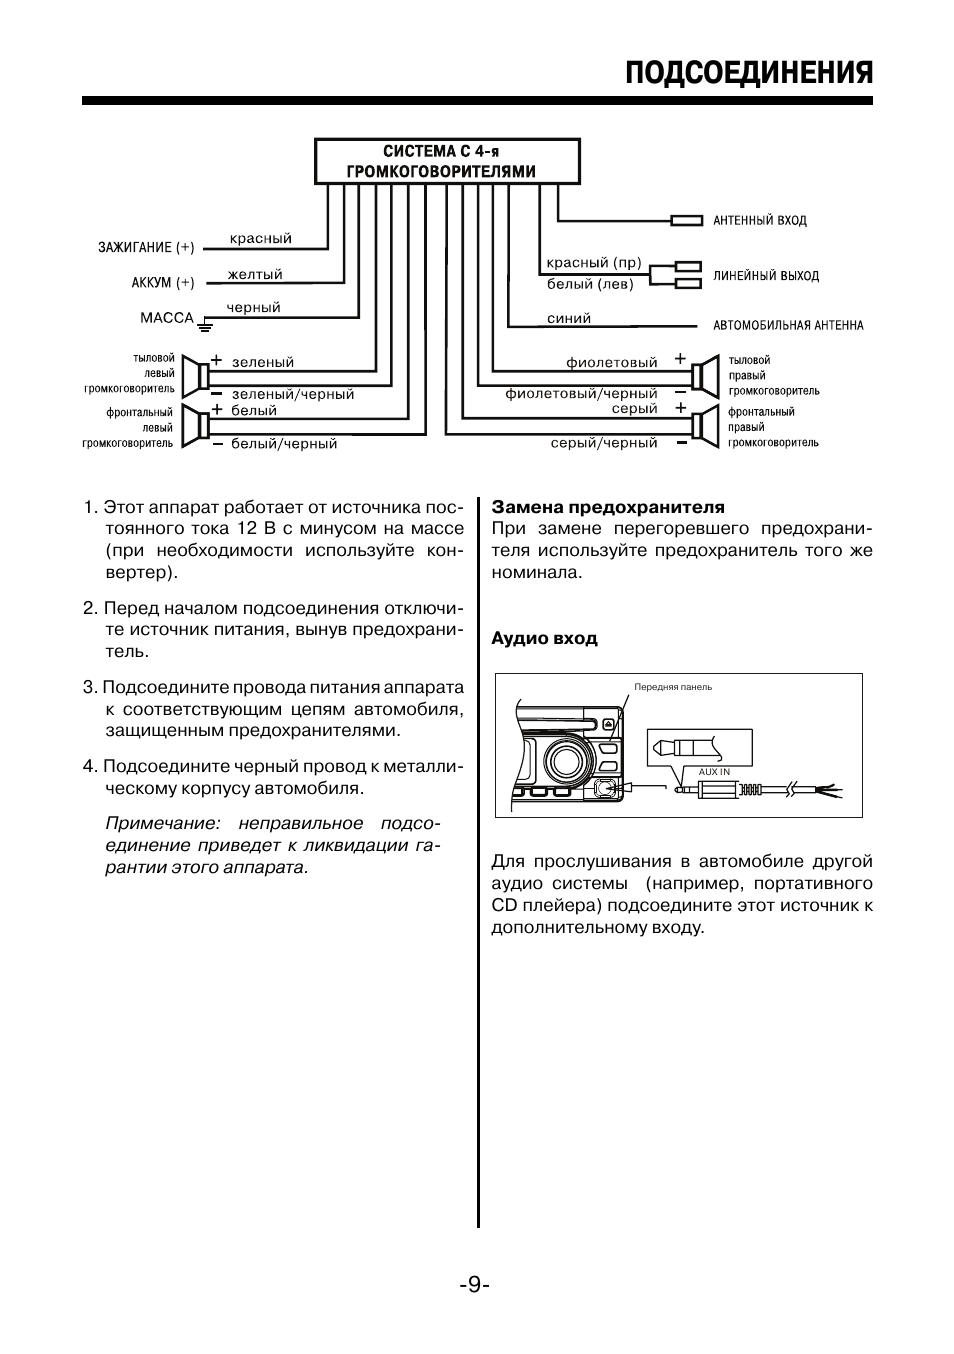 Инструкция к автомобильной магнитоле мистери (mystery): схема подключения автомагнитолы и модели